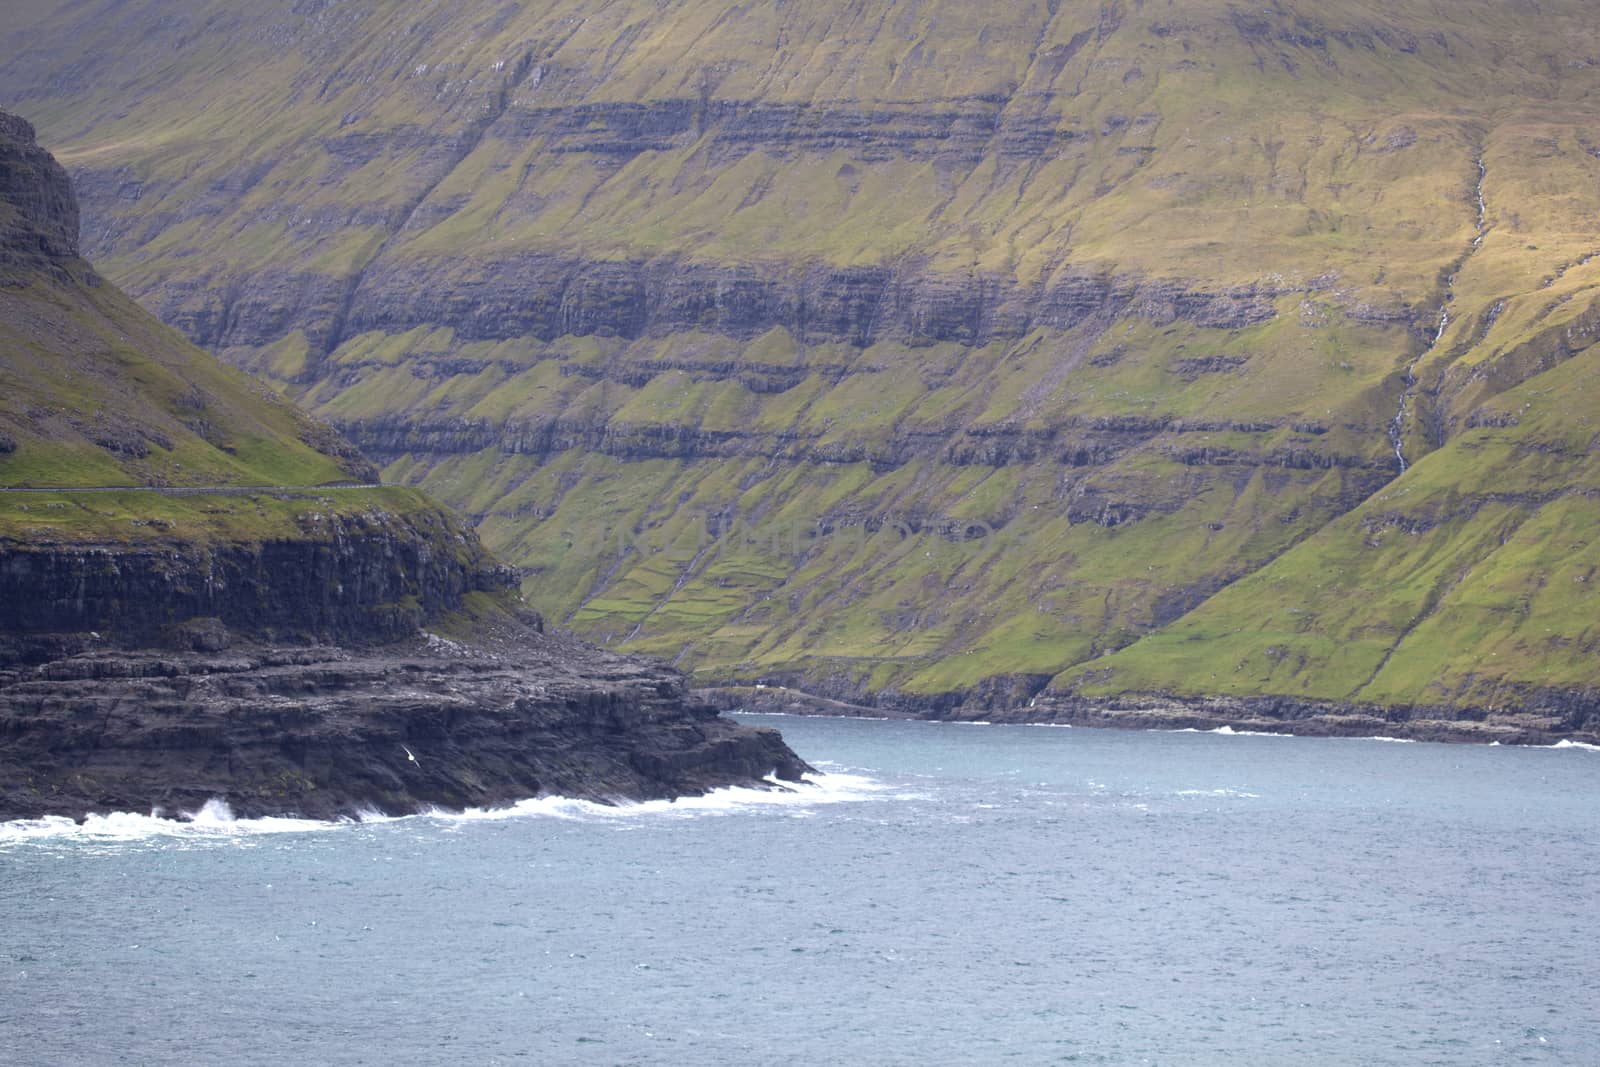 View of Streymoy island from Eysturoy, Faroe Islands